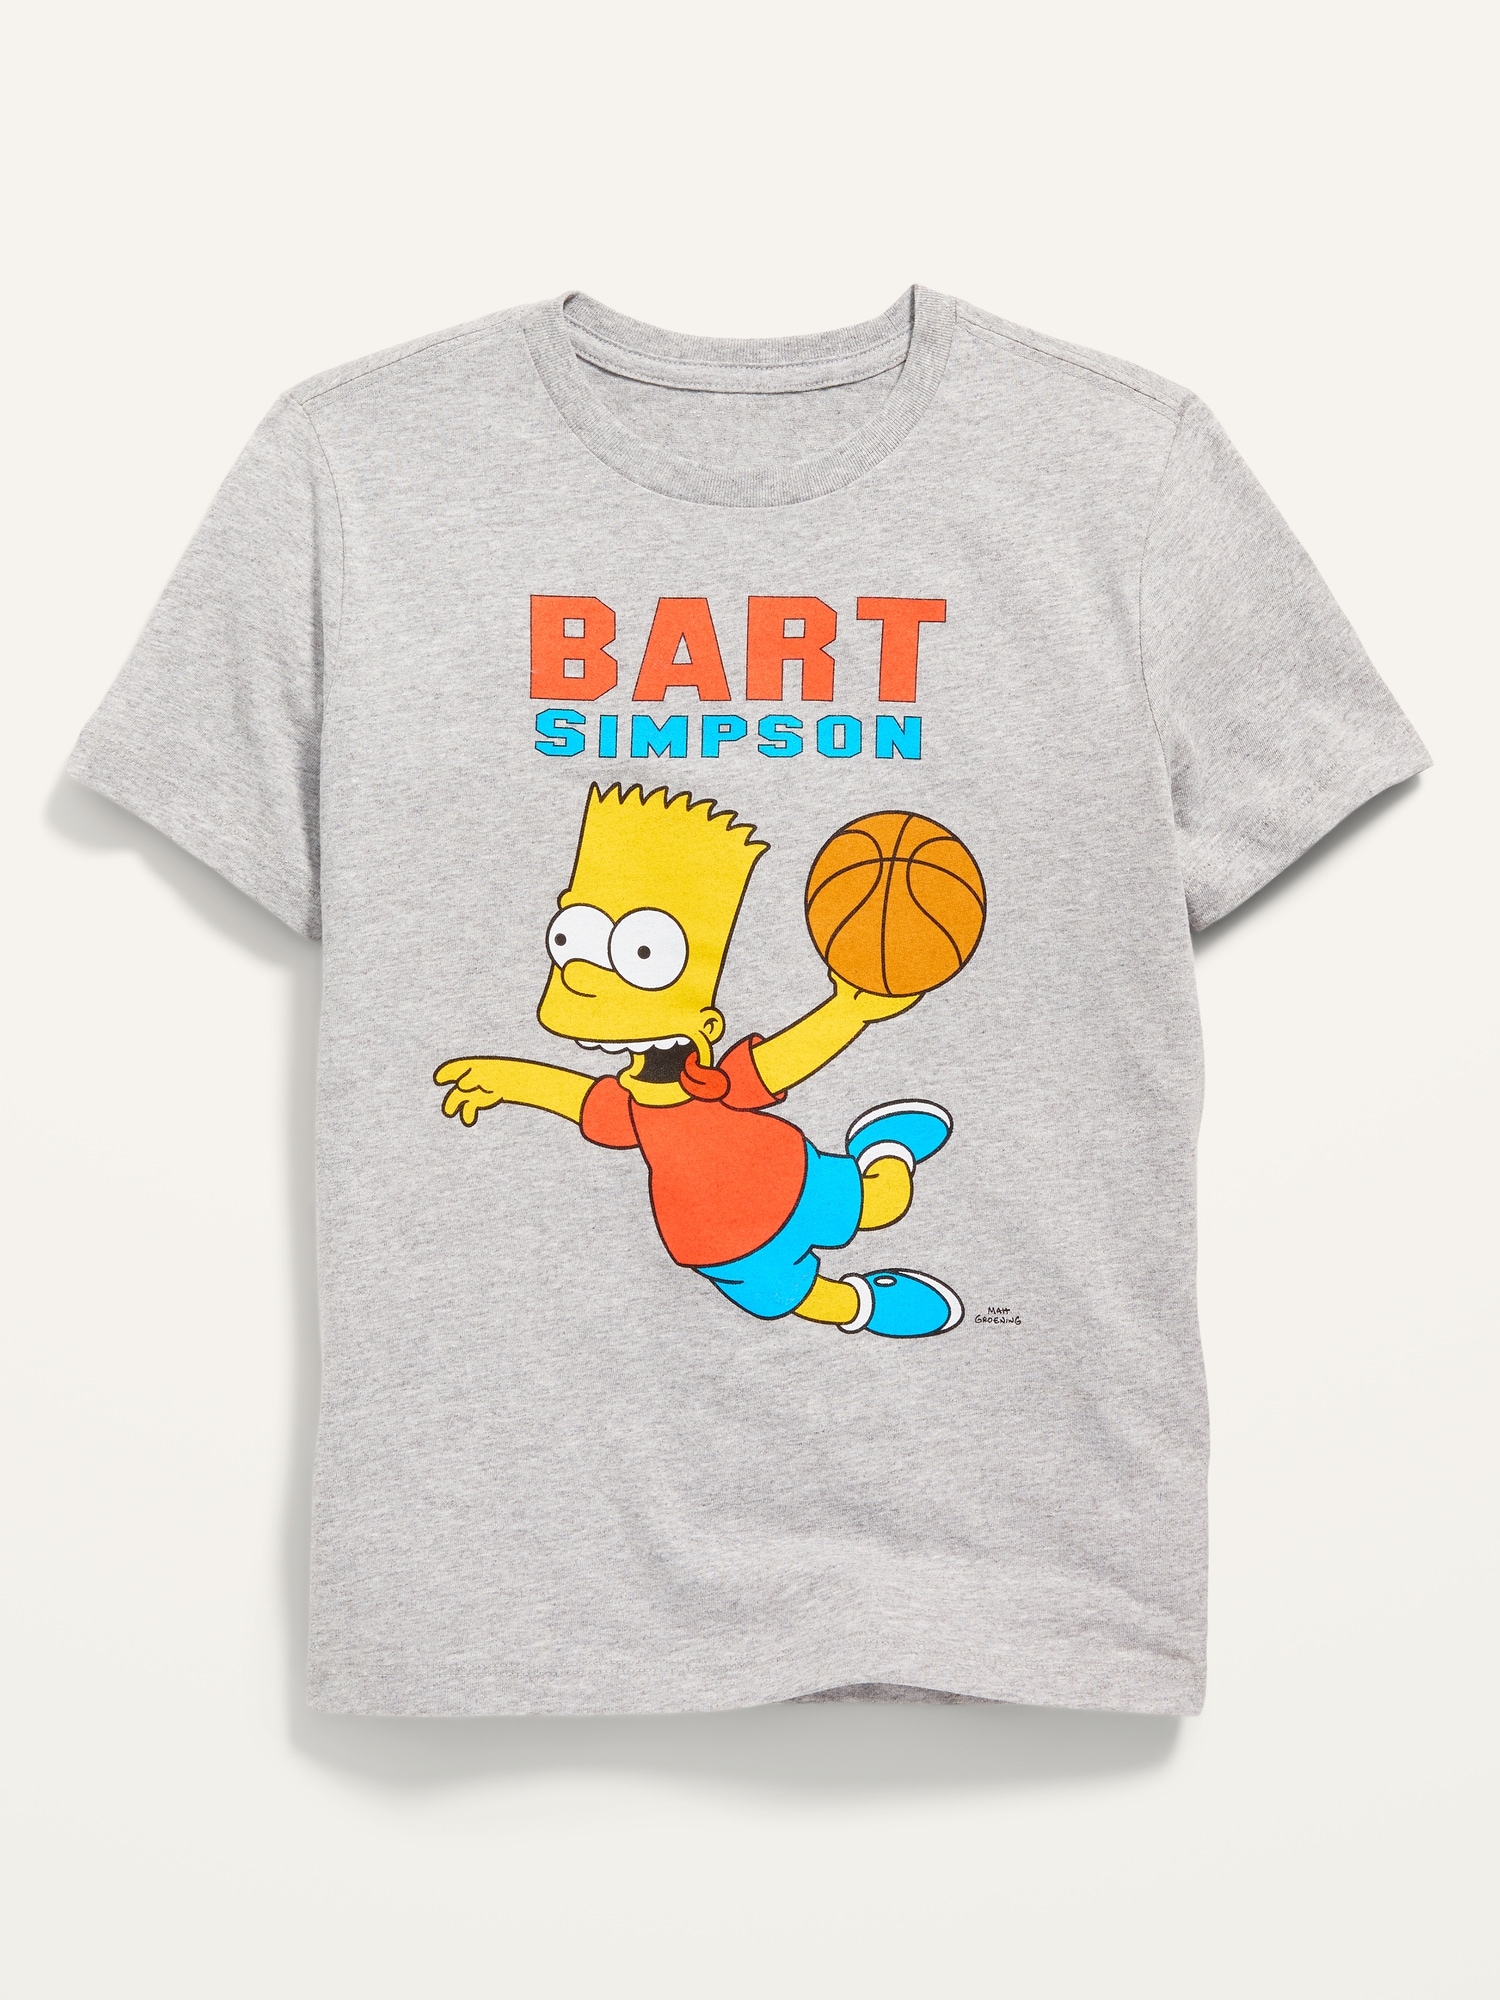 Contrato orificio de soplado Grave The Simpsons™ "Bart Simpson" Gender-Neutral T-Shirt for Kids | Old Navy